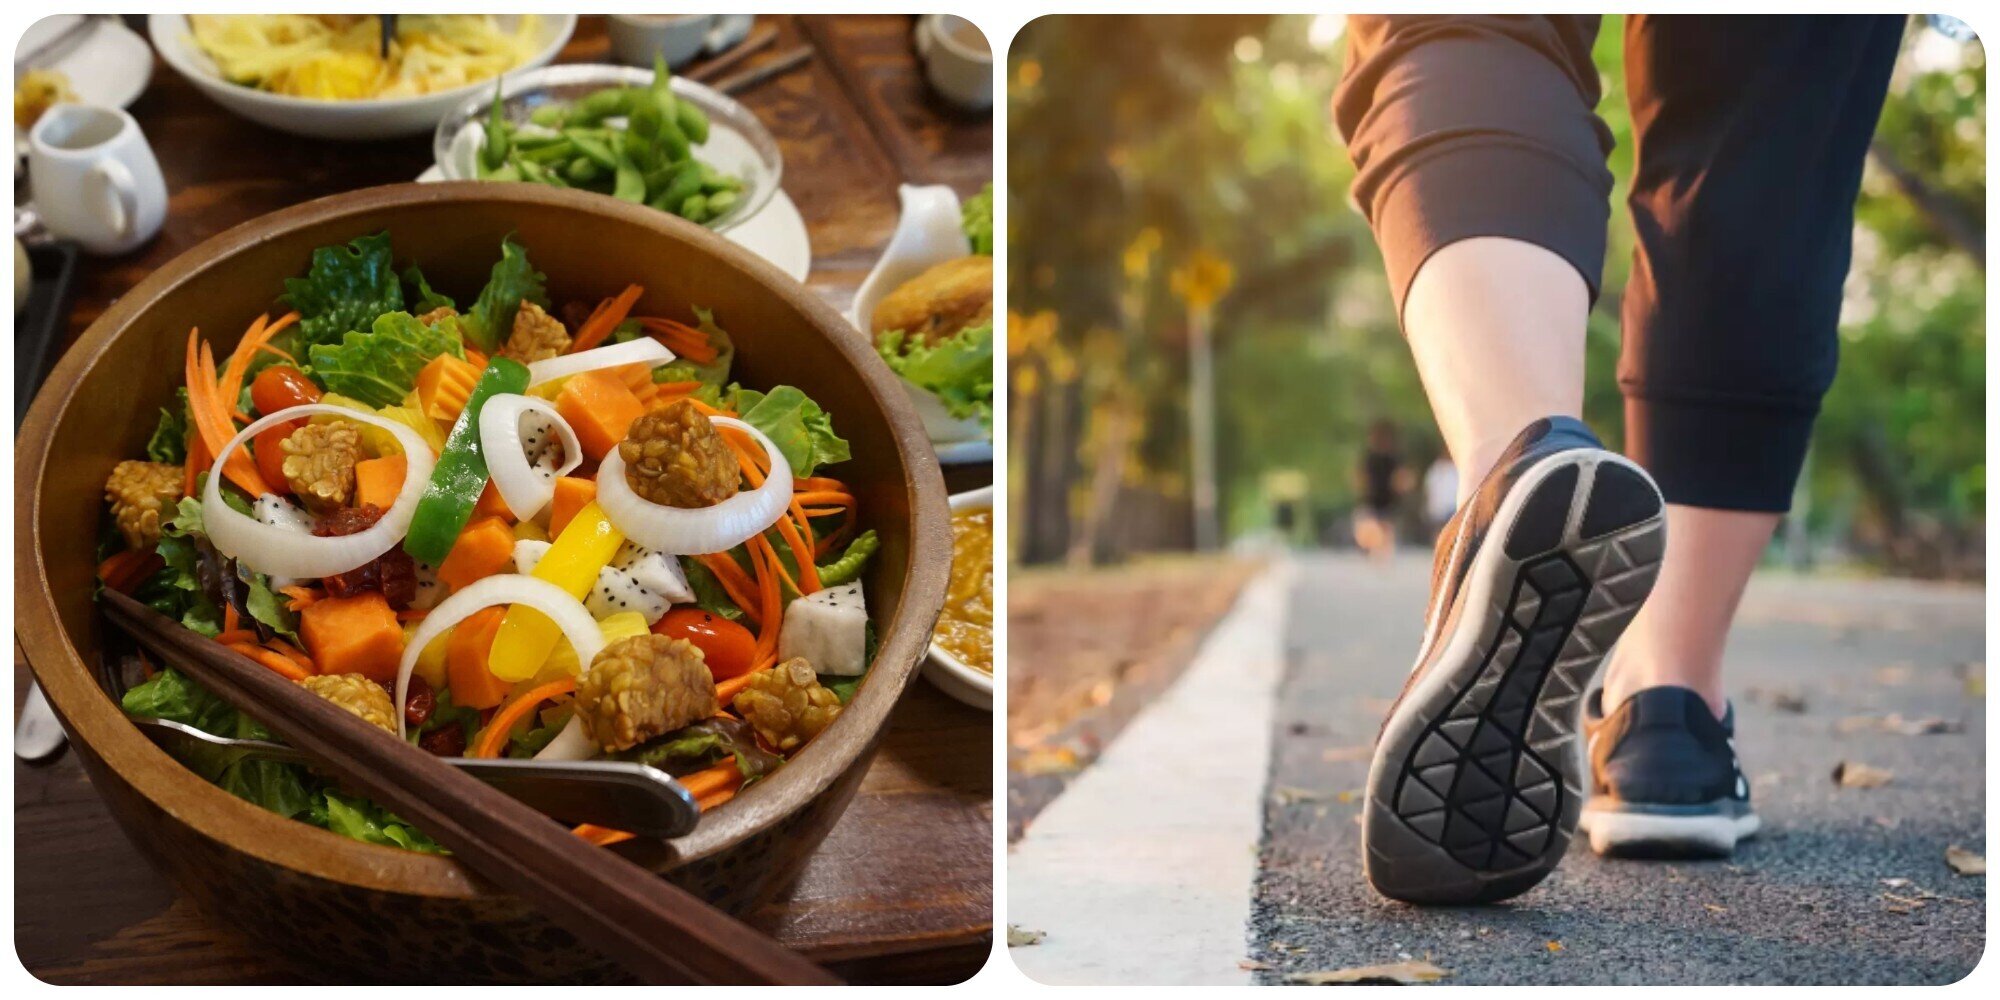 Đi bộ sau bữa tối mang lại nhiều lợi ích với sức khoẻ.